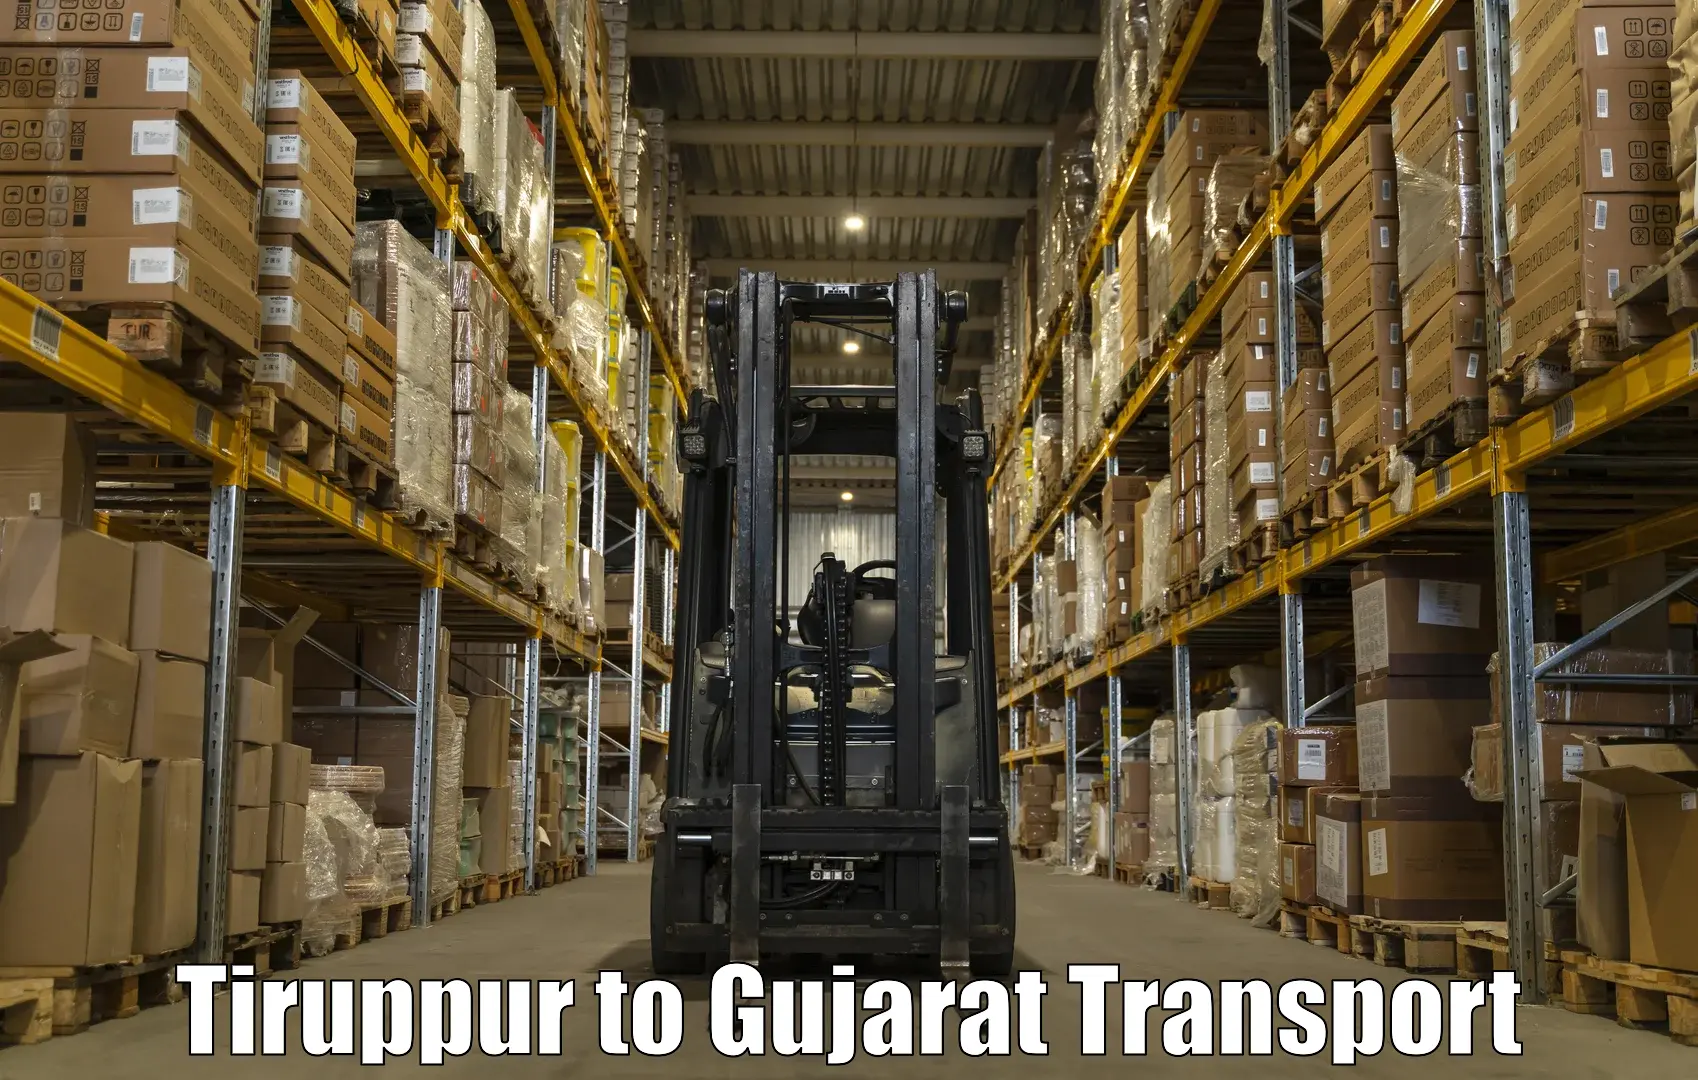 Express transport services Tiruppur to Kodinar